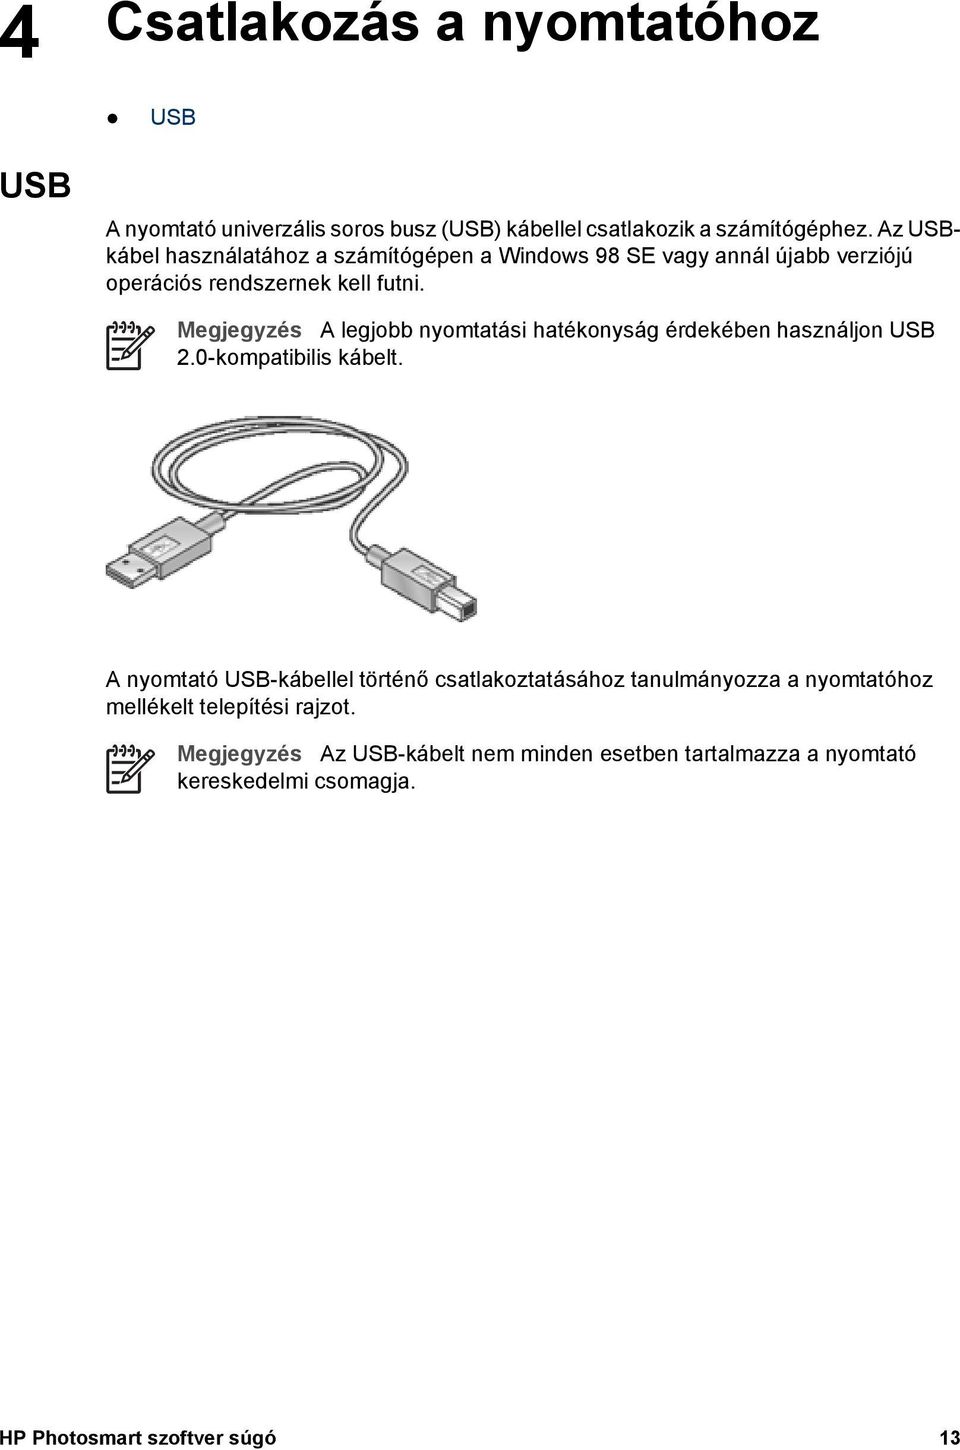 Megjegyzés A legjobb nyomtatási hatékonyság érdekében használjon USB 2.0-kompatibilis kábelt.